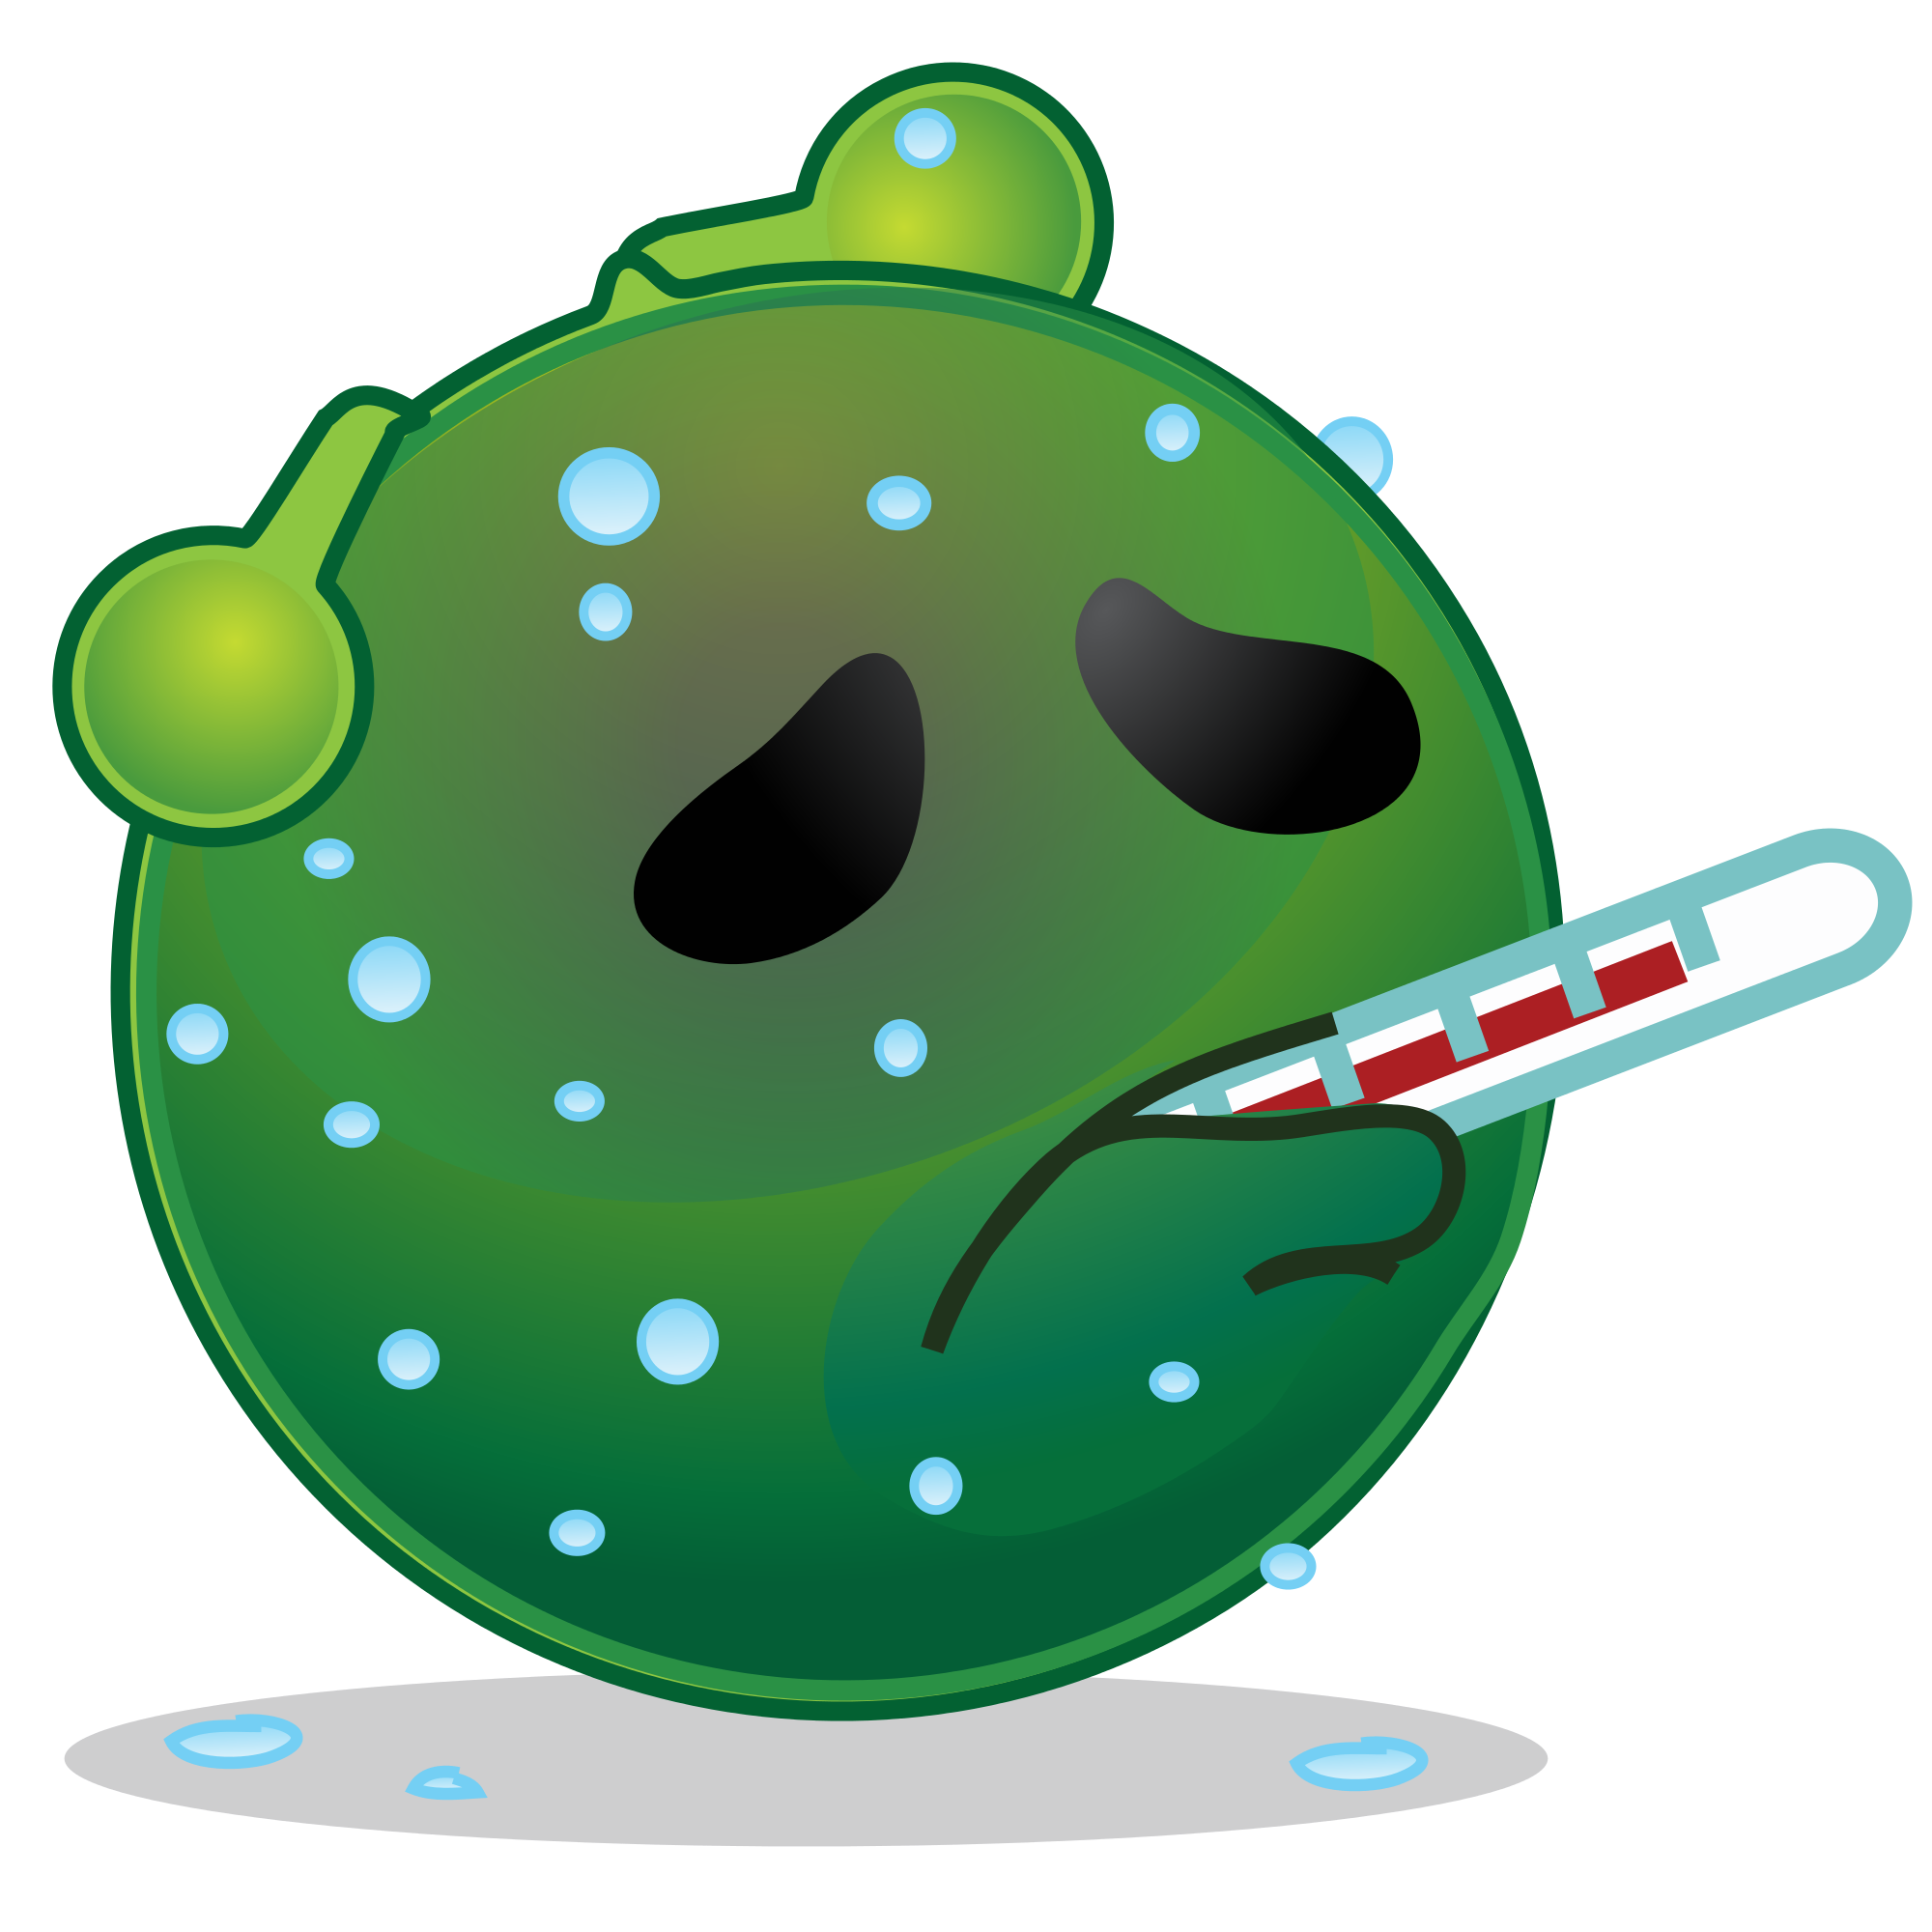 File:Smiley green alien hot fever.svg